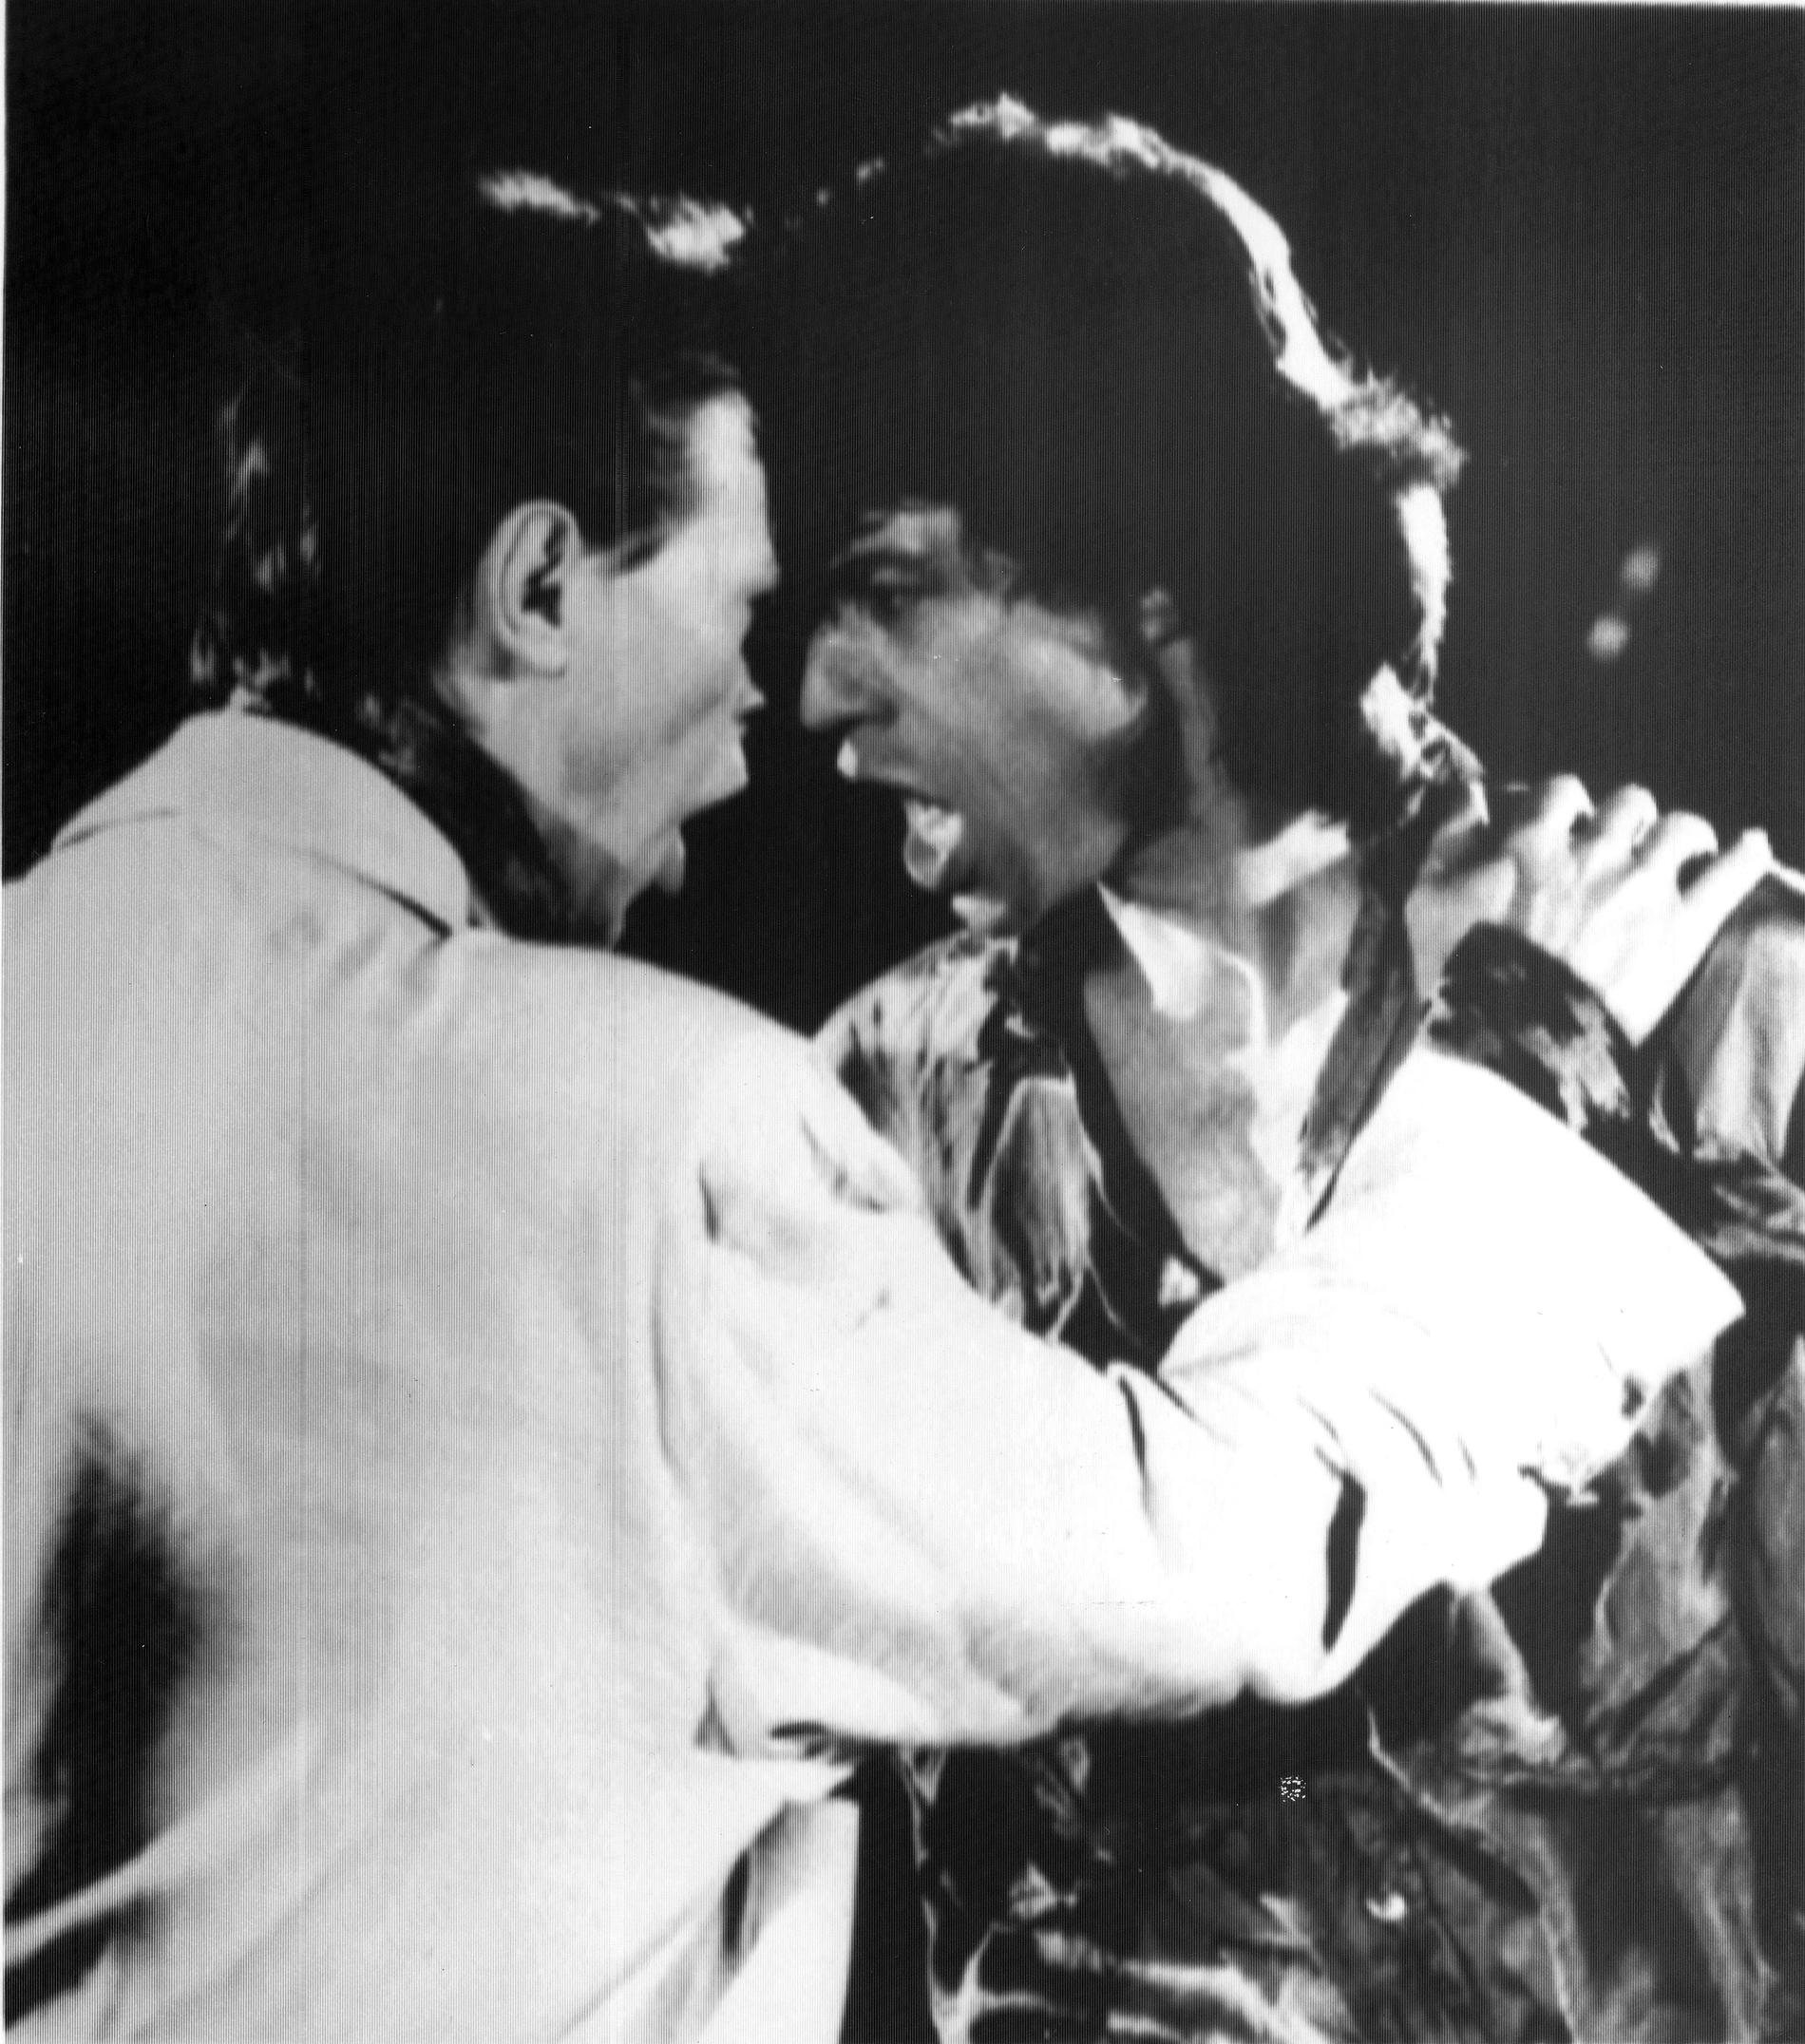 David Bowie och Mick Jagger i videon "Dancing in the street" från 1985